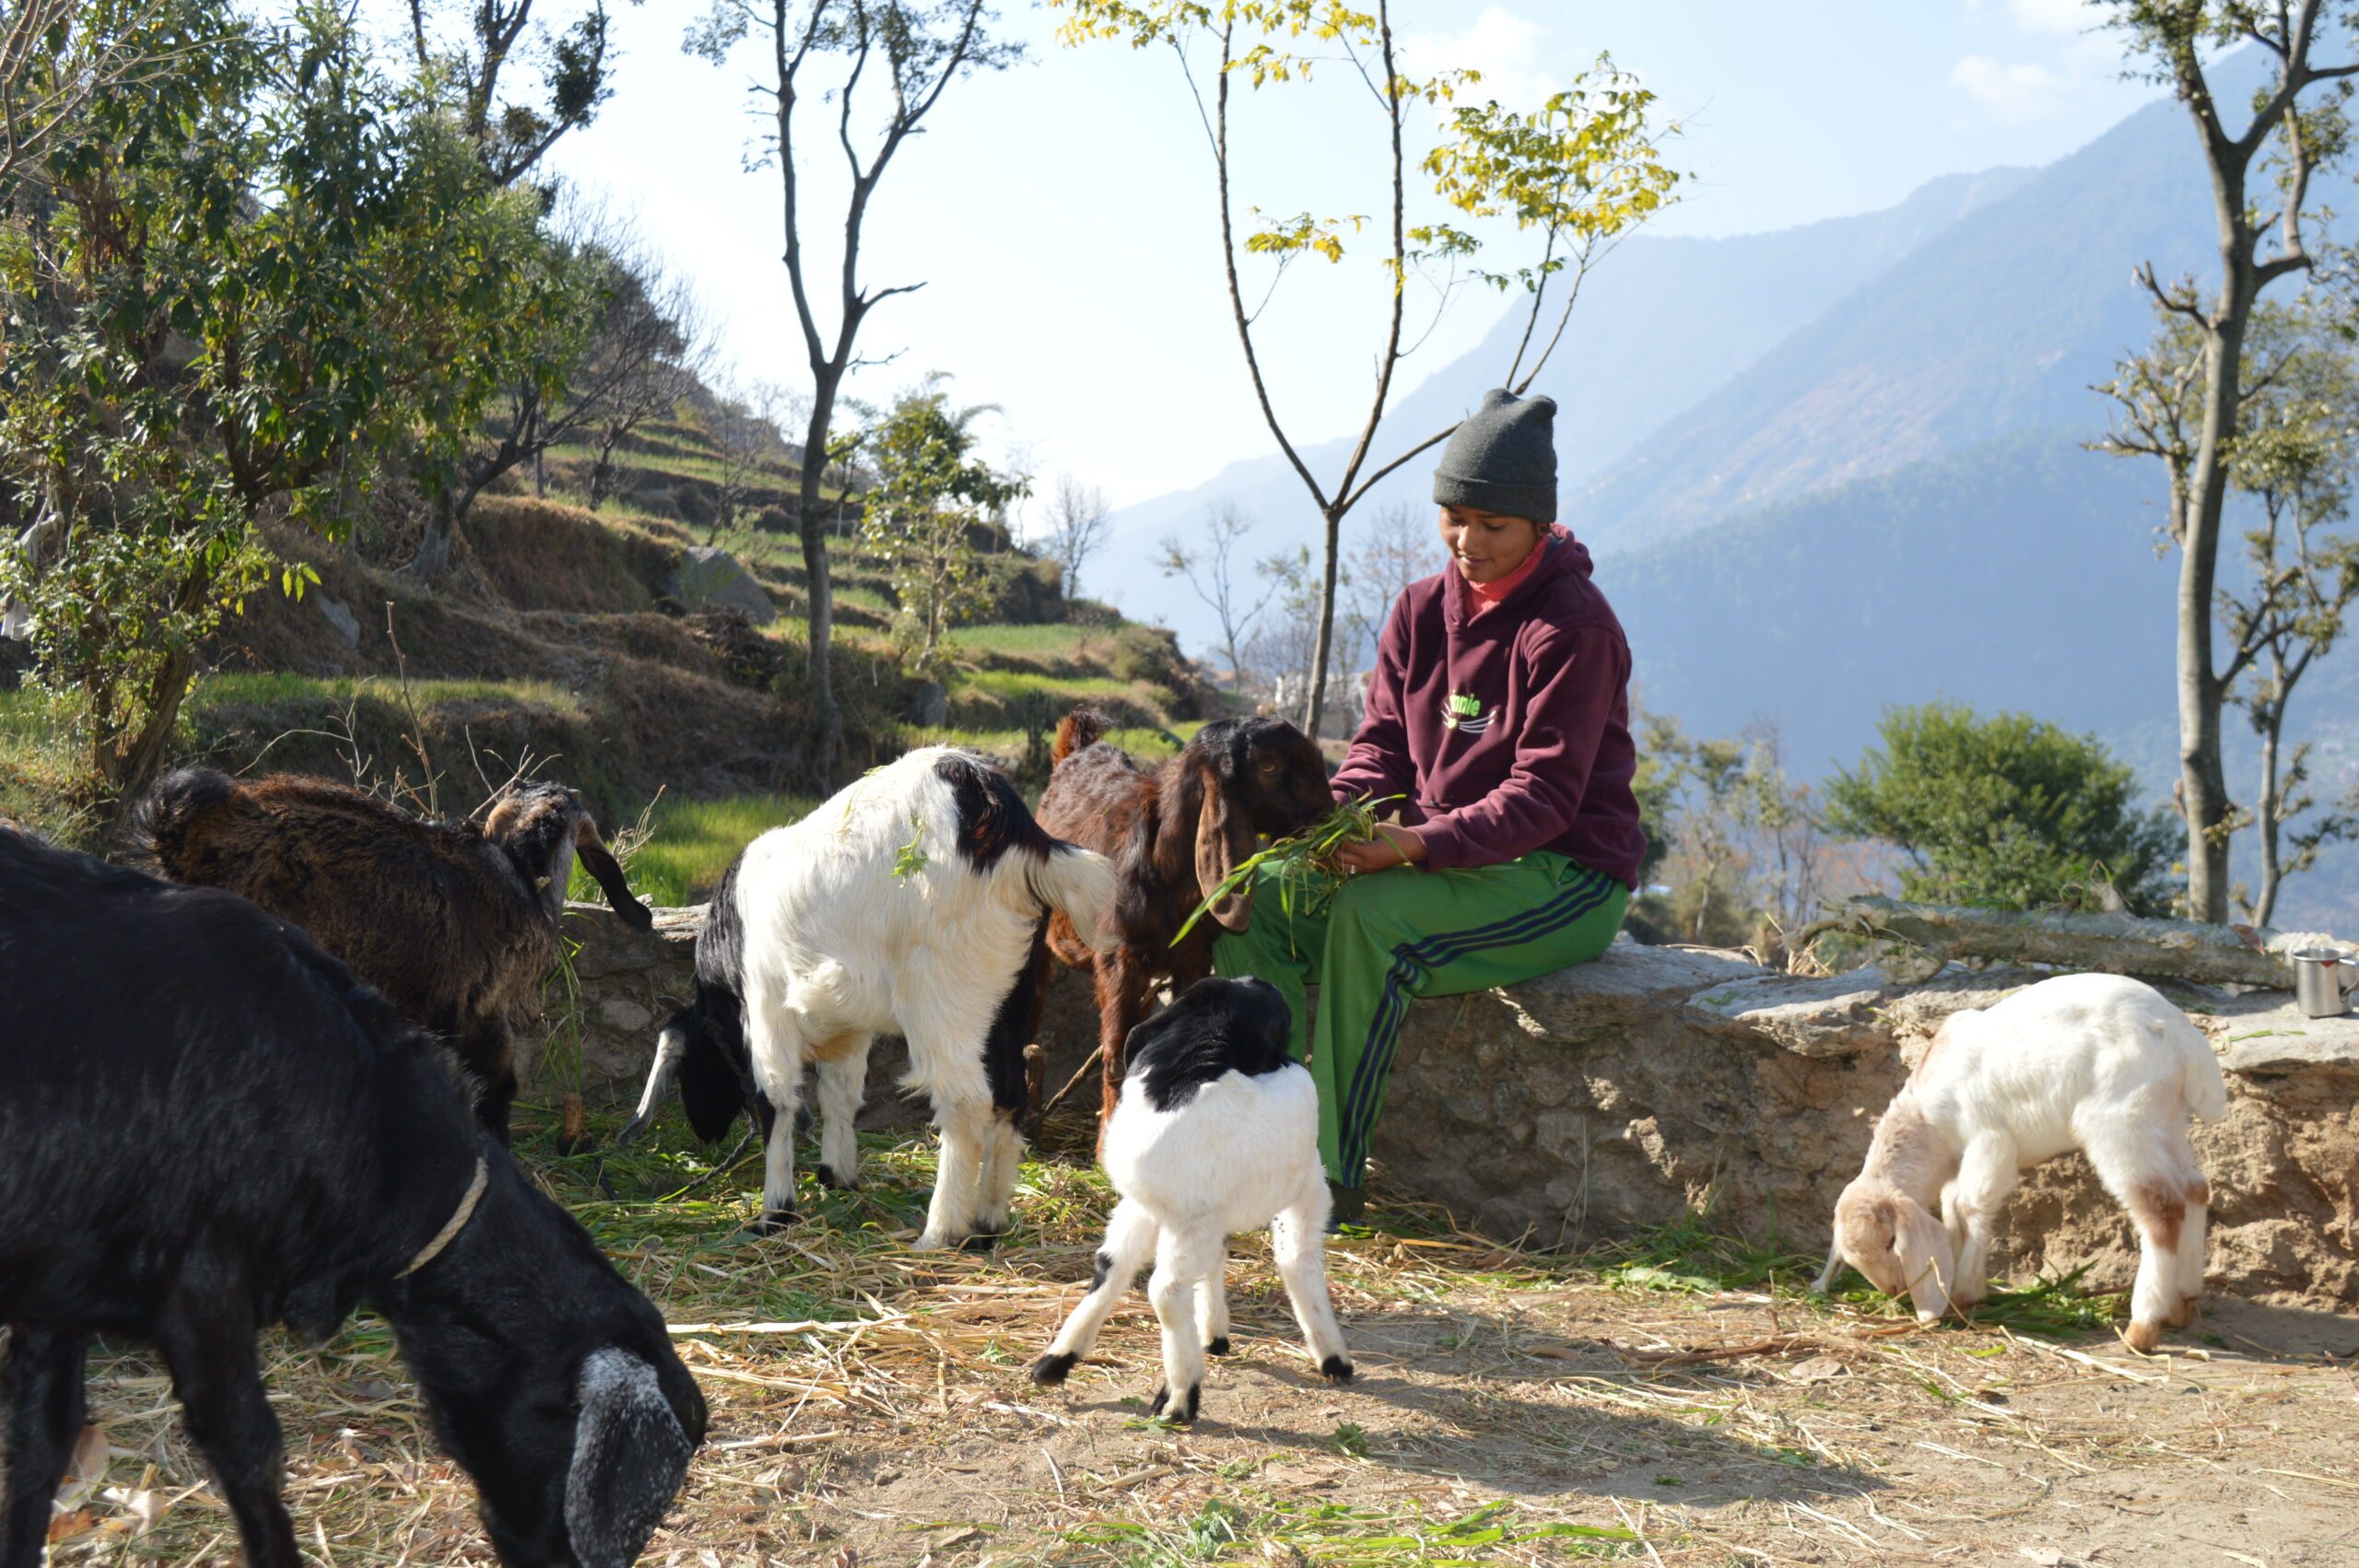 Shristi feeding her goats.